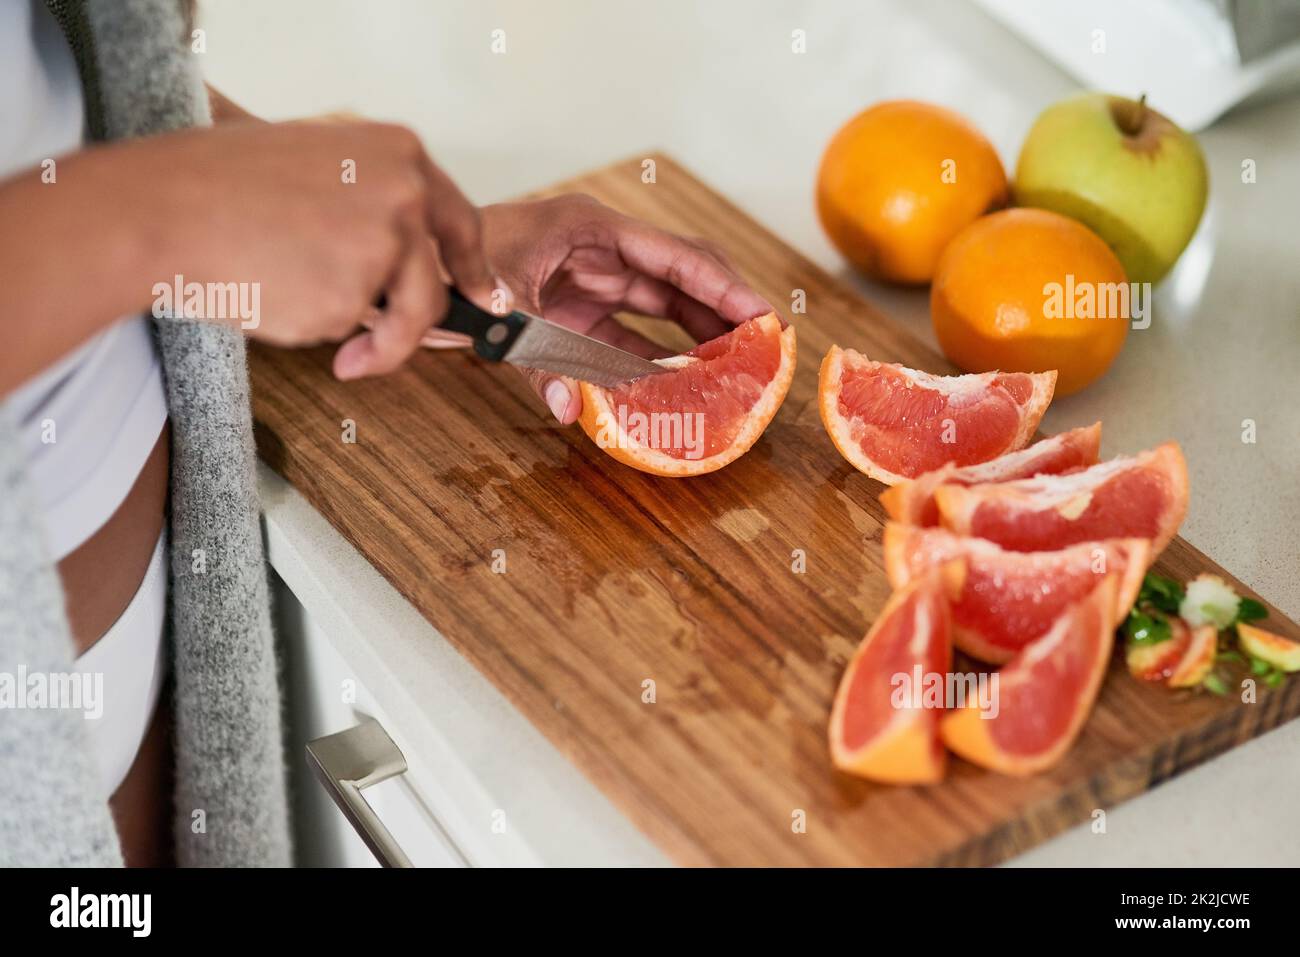 Gesund essen, glücklich sein. Aufnahme einer nicht identifizierbaren Frau, die in ihrer Küche zu Hause Obst zum Frühstück schneidet. Stockfoto